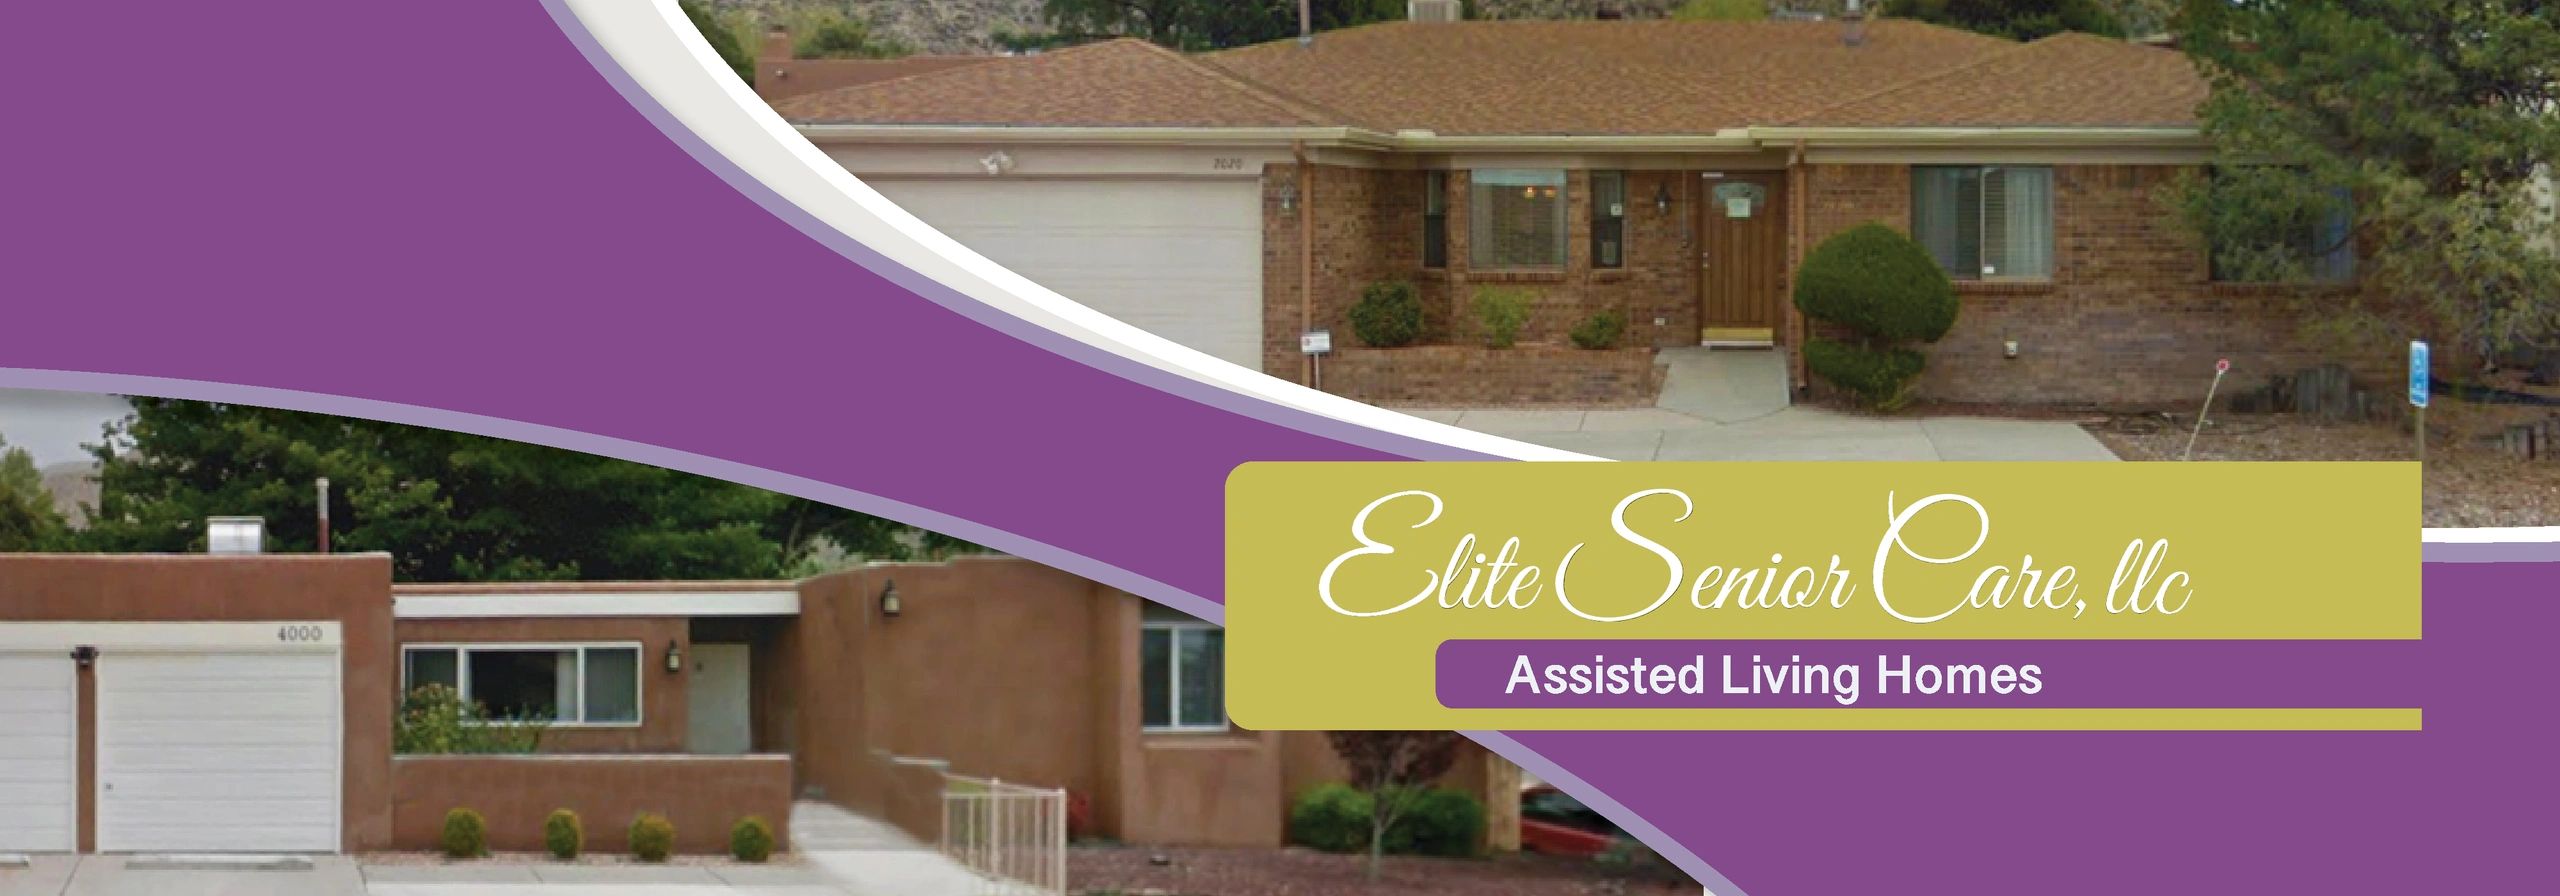 Elite Senior Care - Assisted Living, Senior Care - Albuquerque